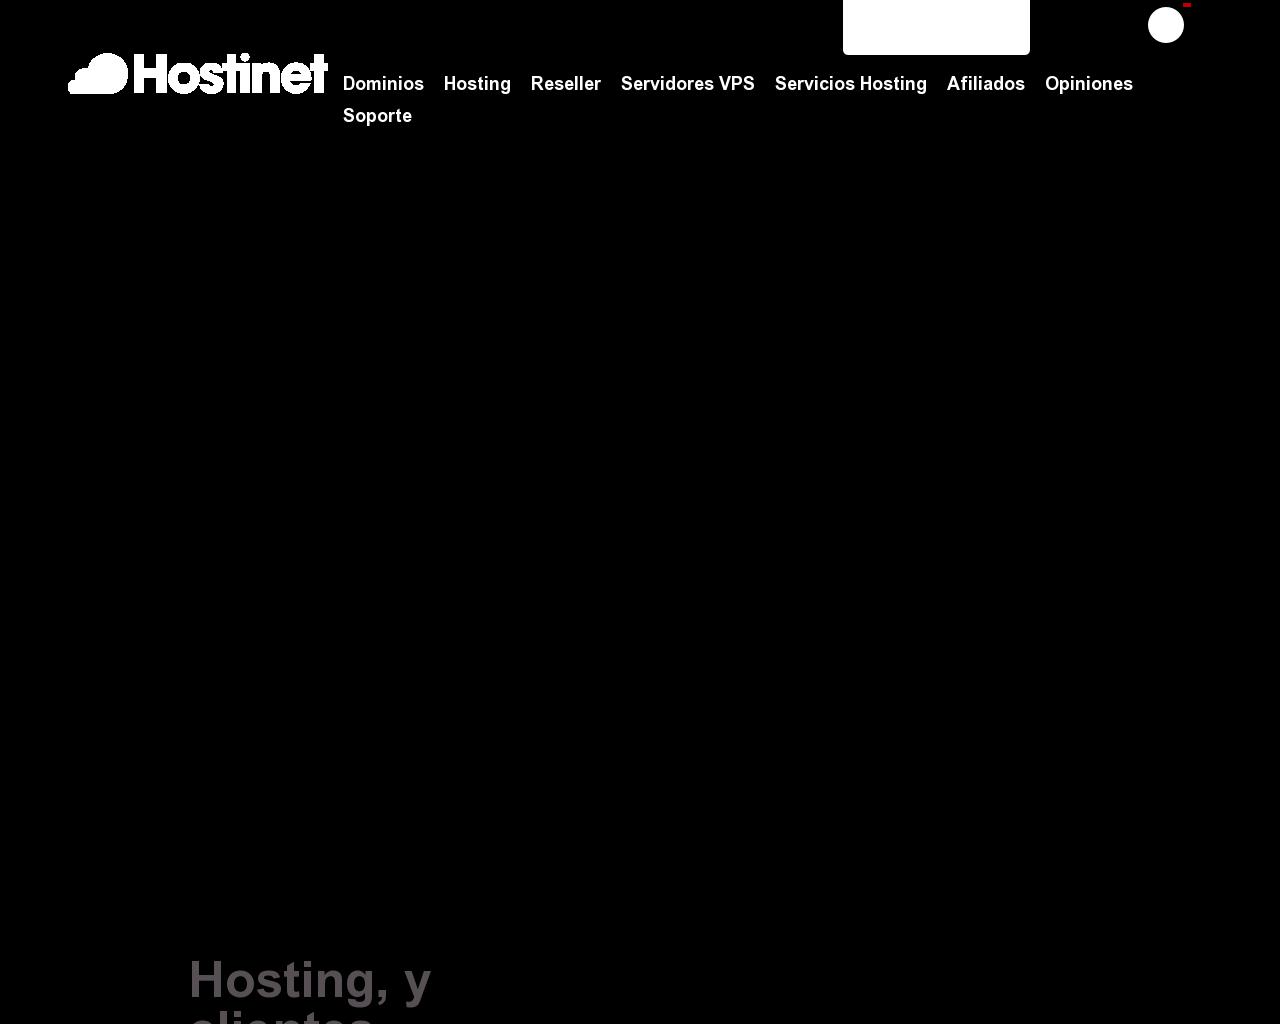 hostinet.com